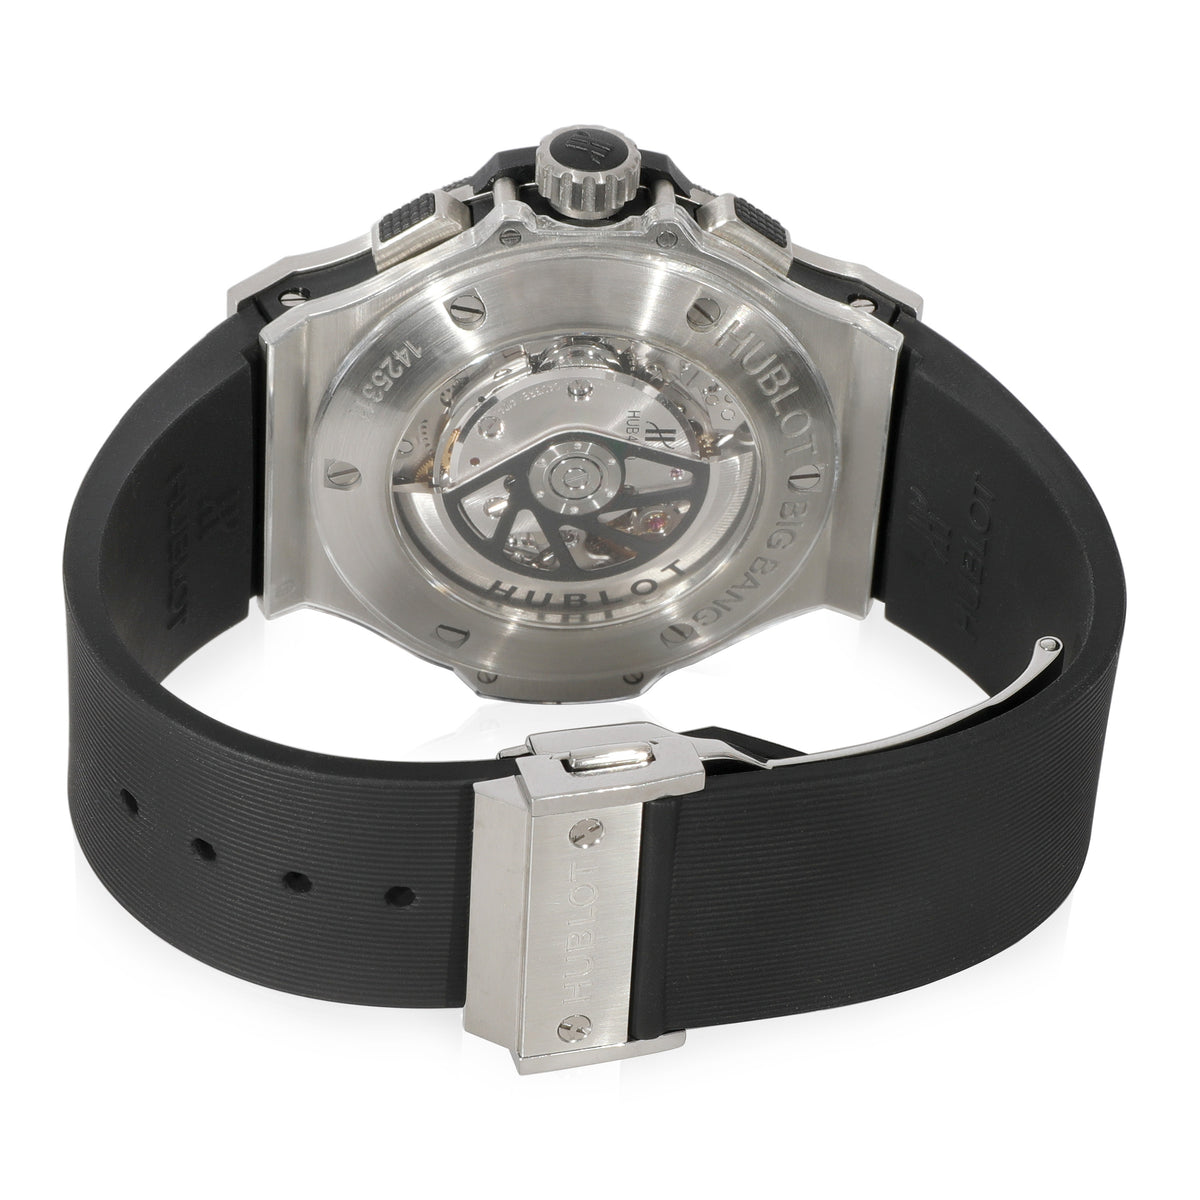 Hublot Big Bang 301.SM.1770.RX Men's Watch in  Stainless Steel/Ceramic